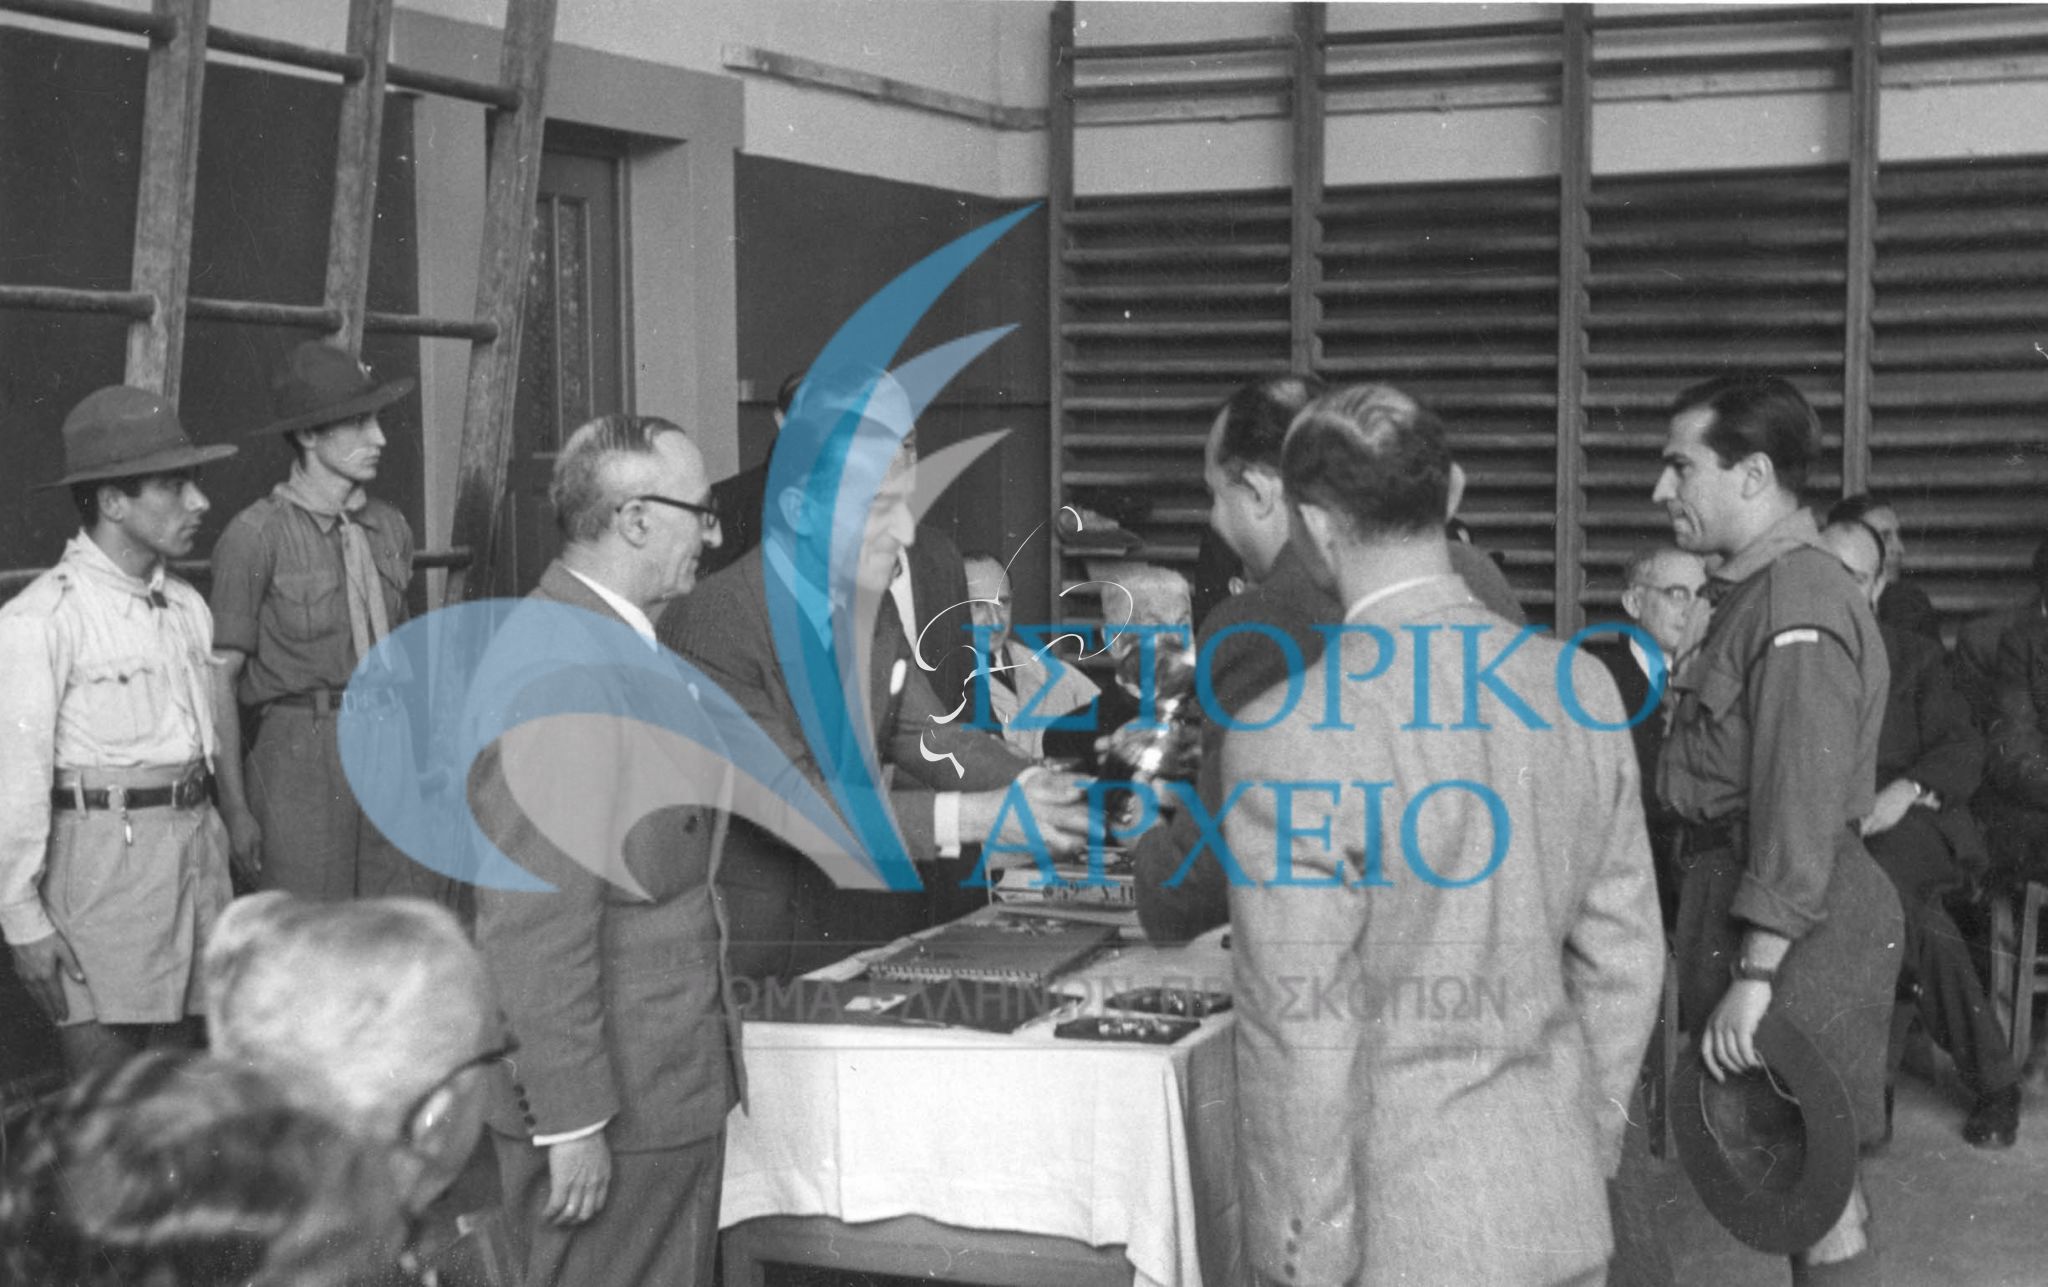 Ο πρόεδρος του Τοπικού Προσκοπικού Συνδέσμου Αθηνών απονέμει έπαθλα σε νικητές του Μεγάλου Παιχνιδιού πόλης το 1948. Μαζί του ο έφορος Η. Ησαϊας.